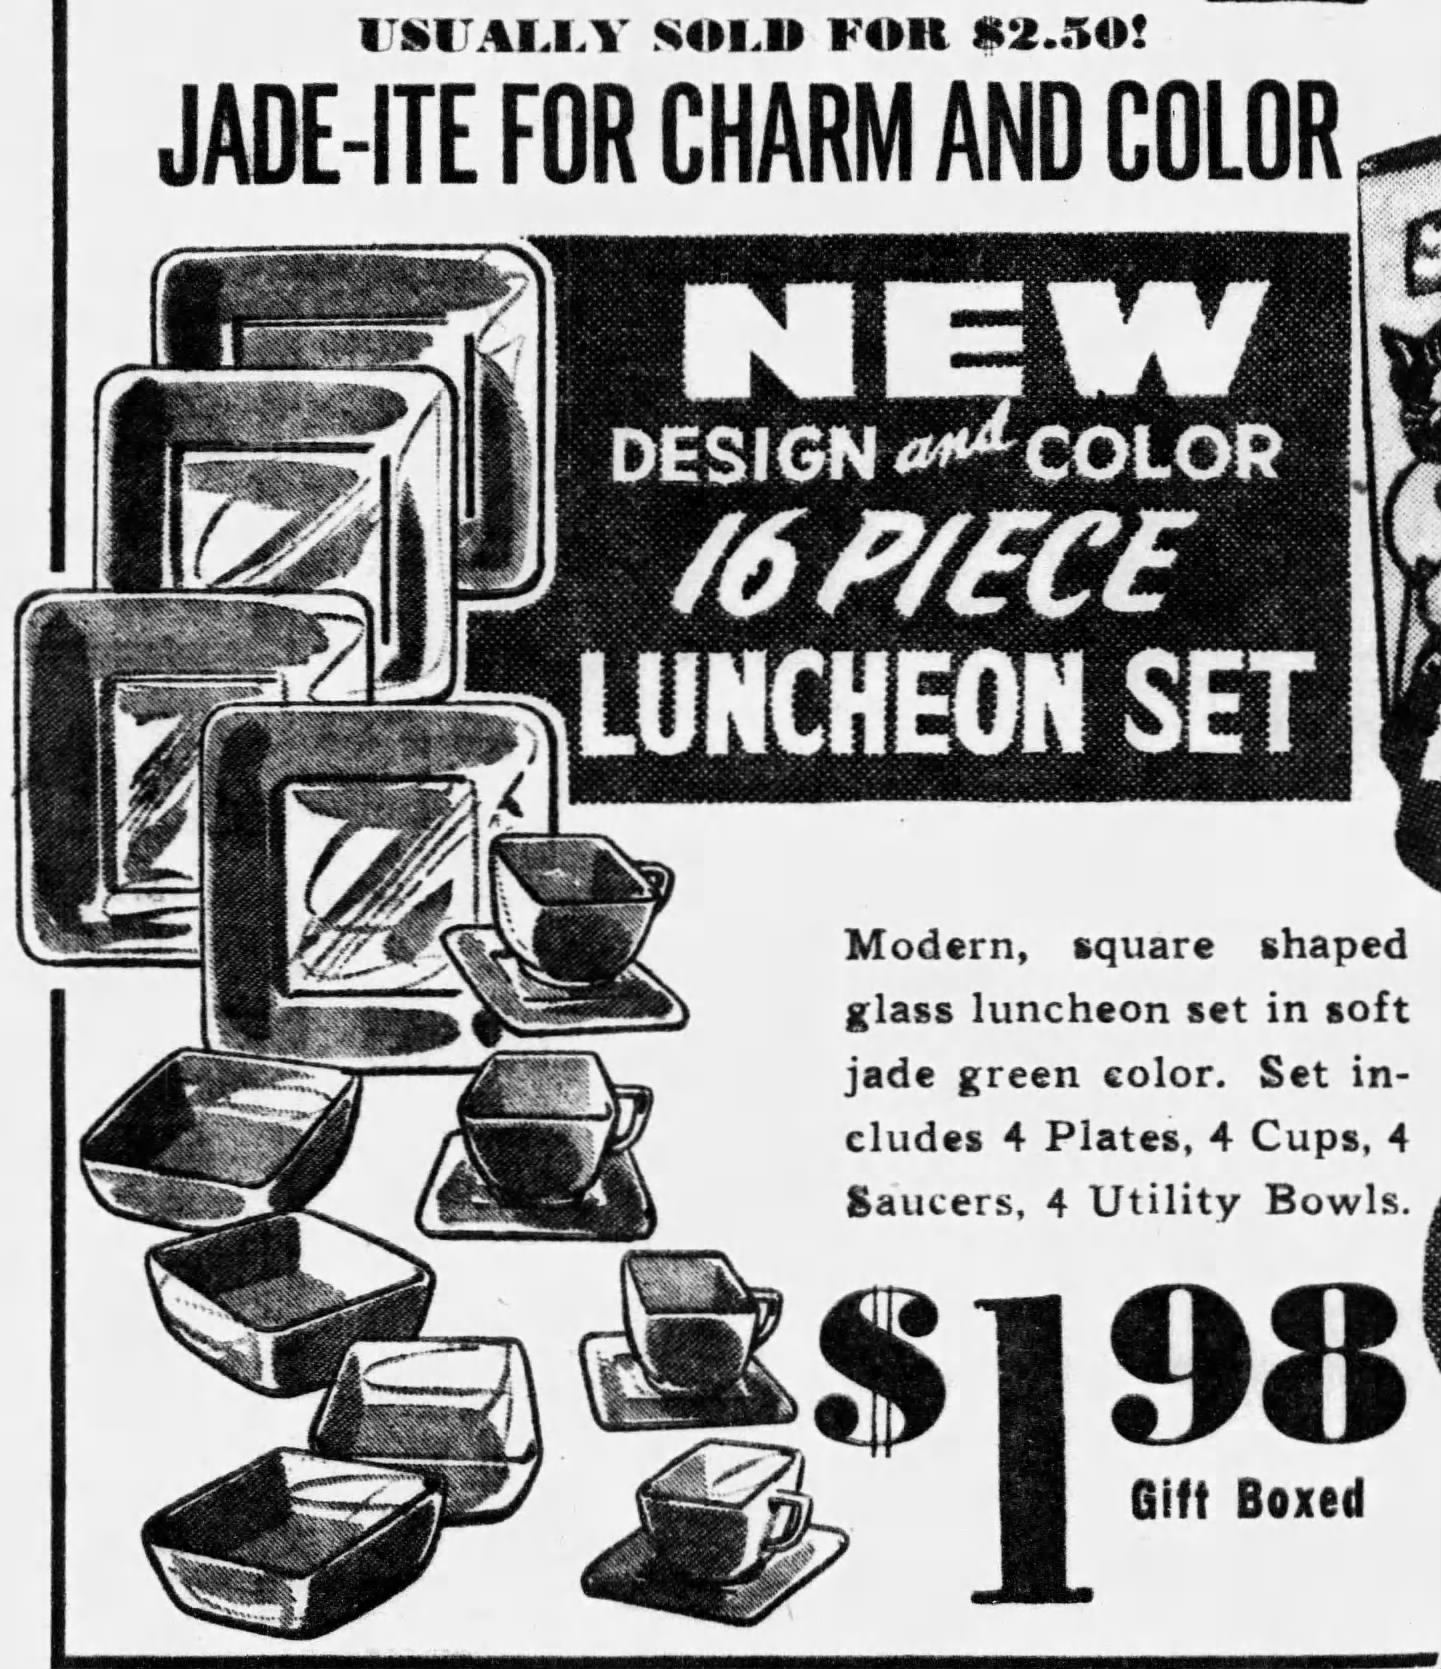 Charm Jadeite Dishes 16-piece Luncheon Set Advertisement